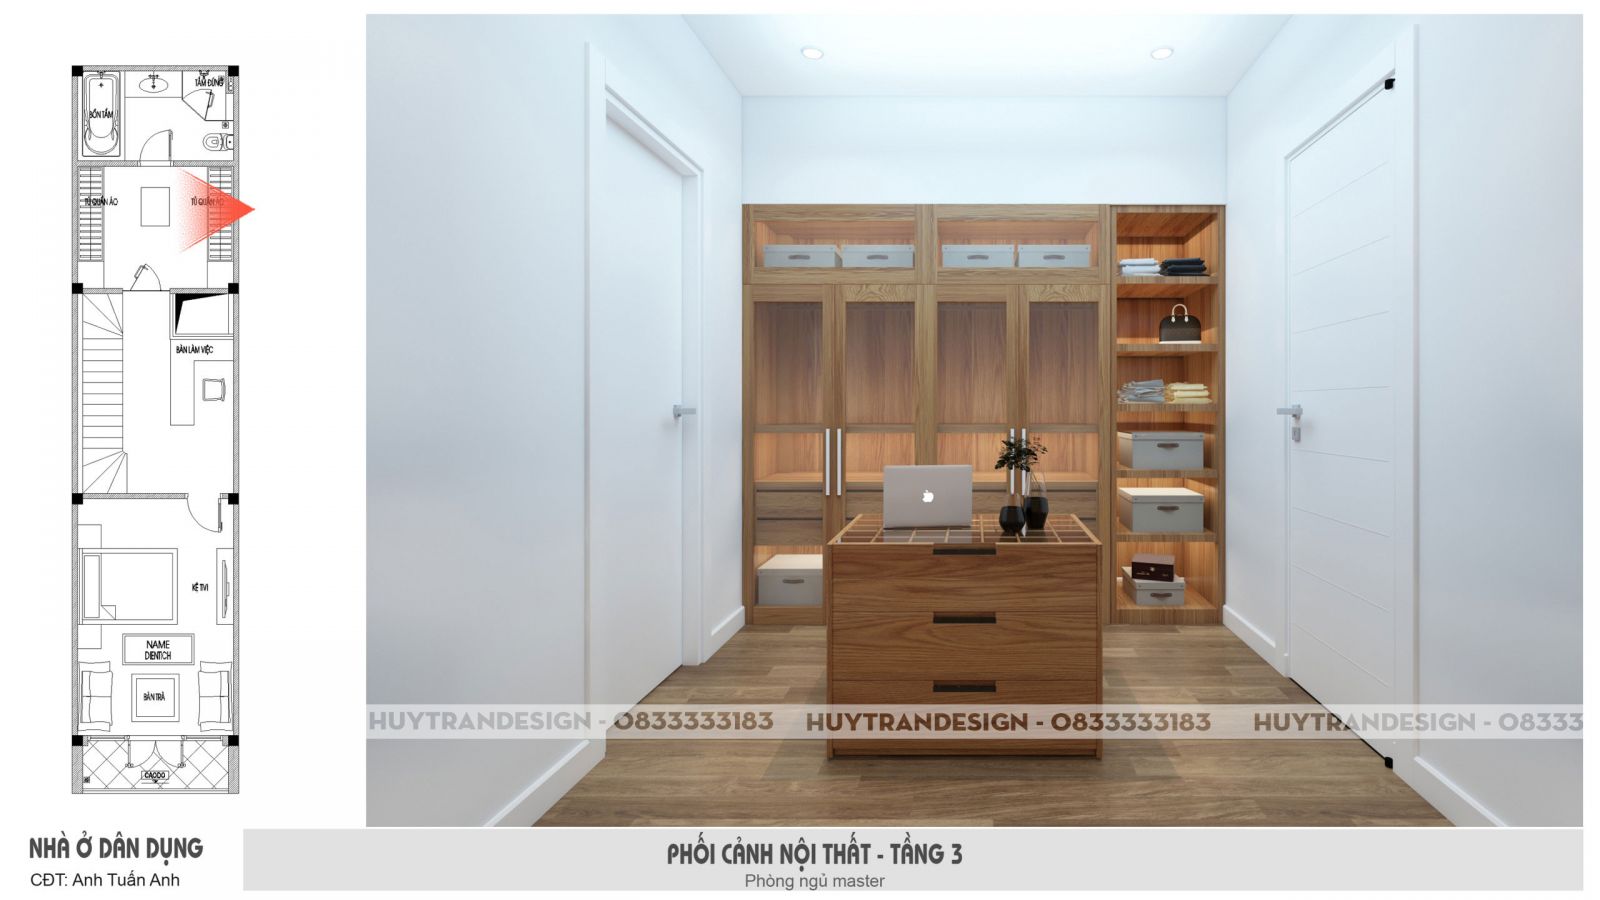 Thiết kế nội thất hiện đại - thiết kế nội thất phòng để đồ - huytrandesign tư vấn, thiết kế, thi công, sửa chữa nội thất nhà ở, nội thất chung cư -v12